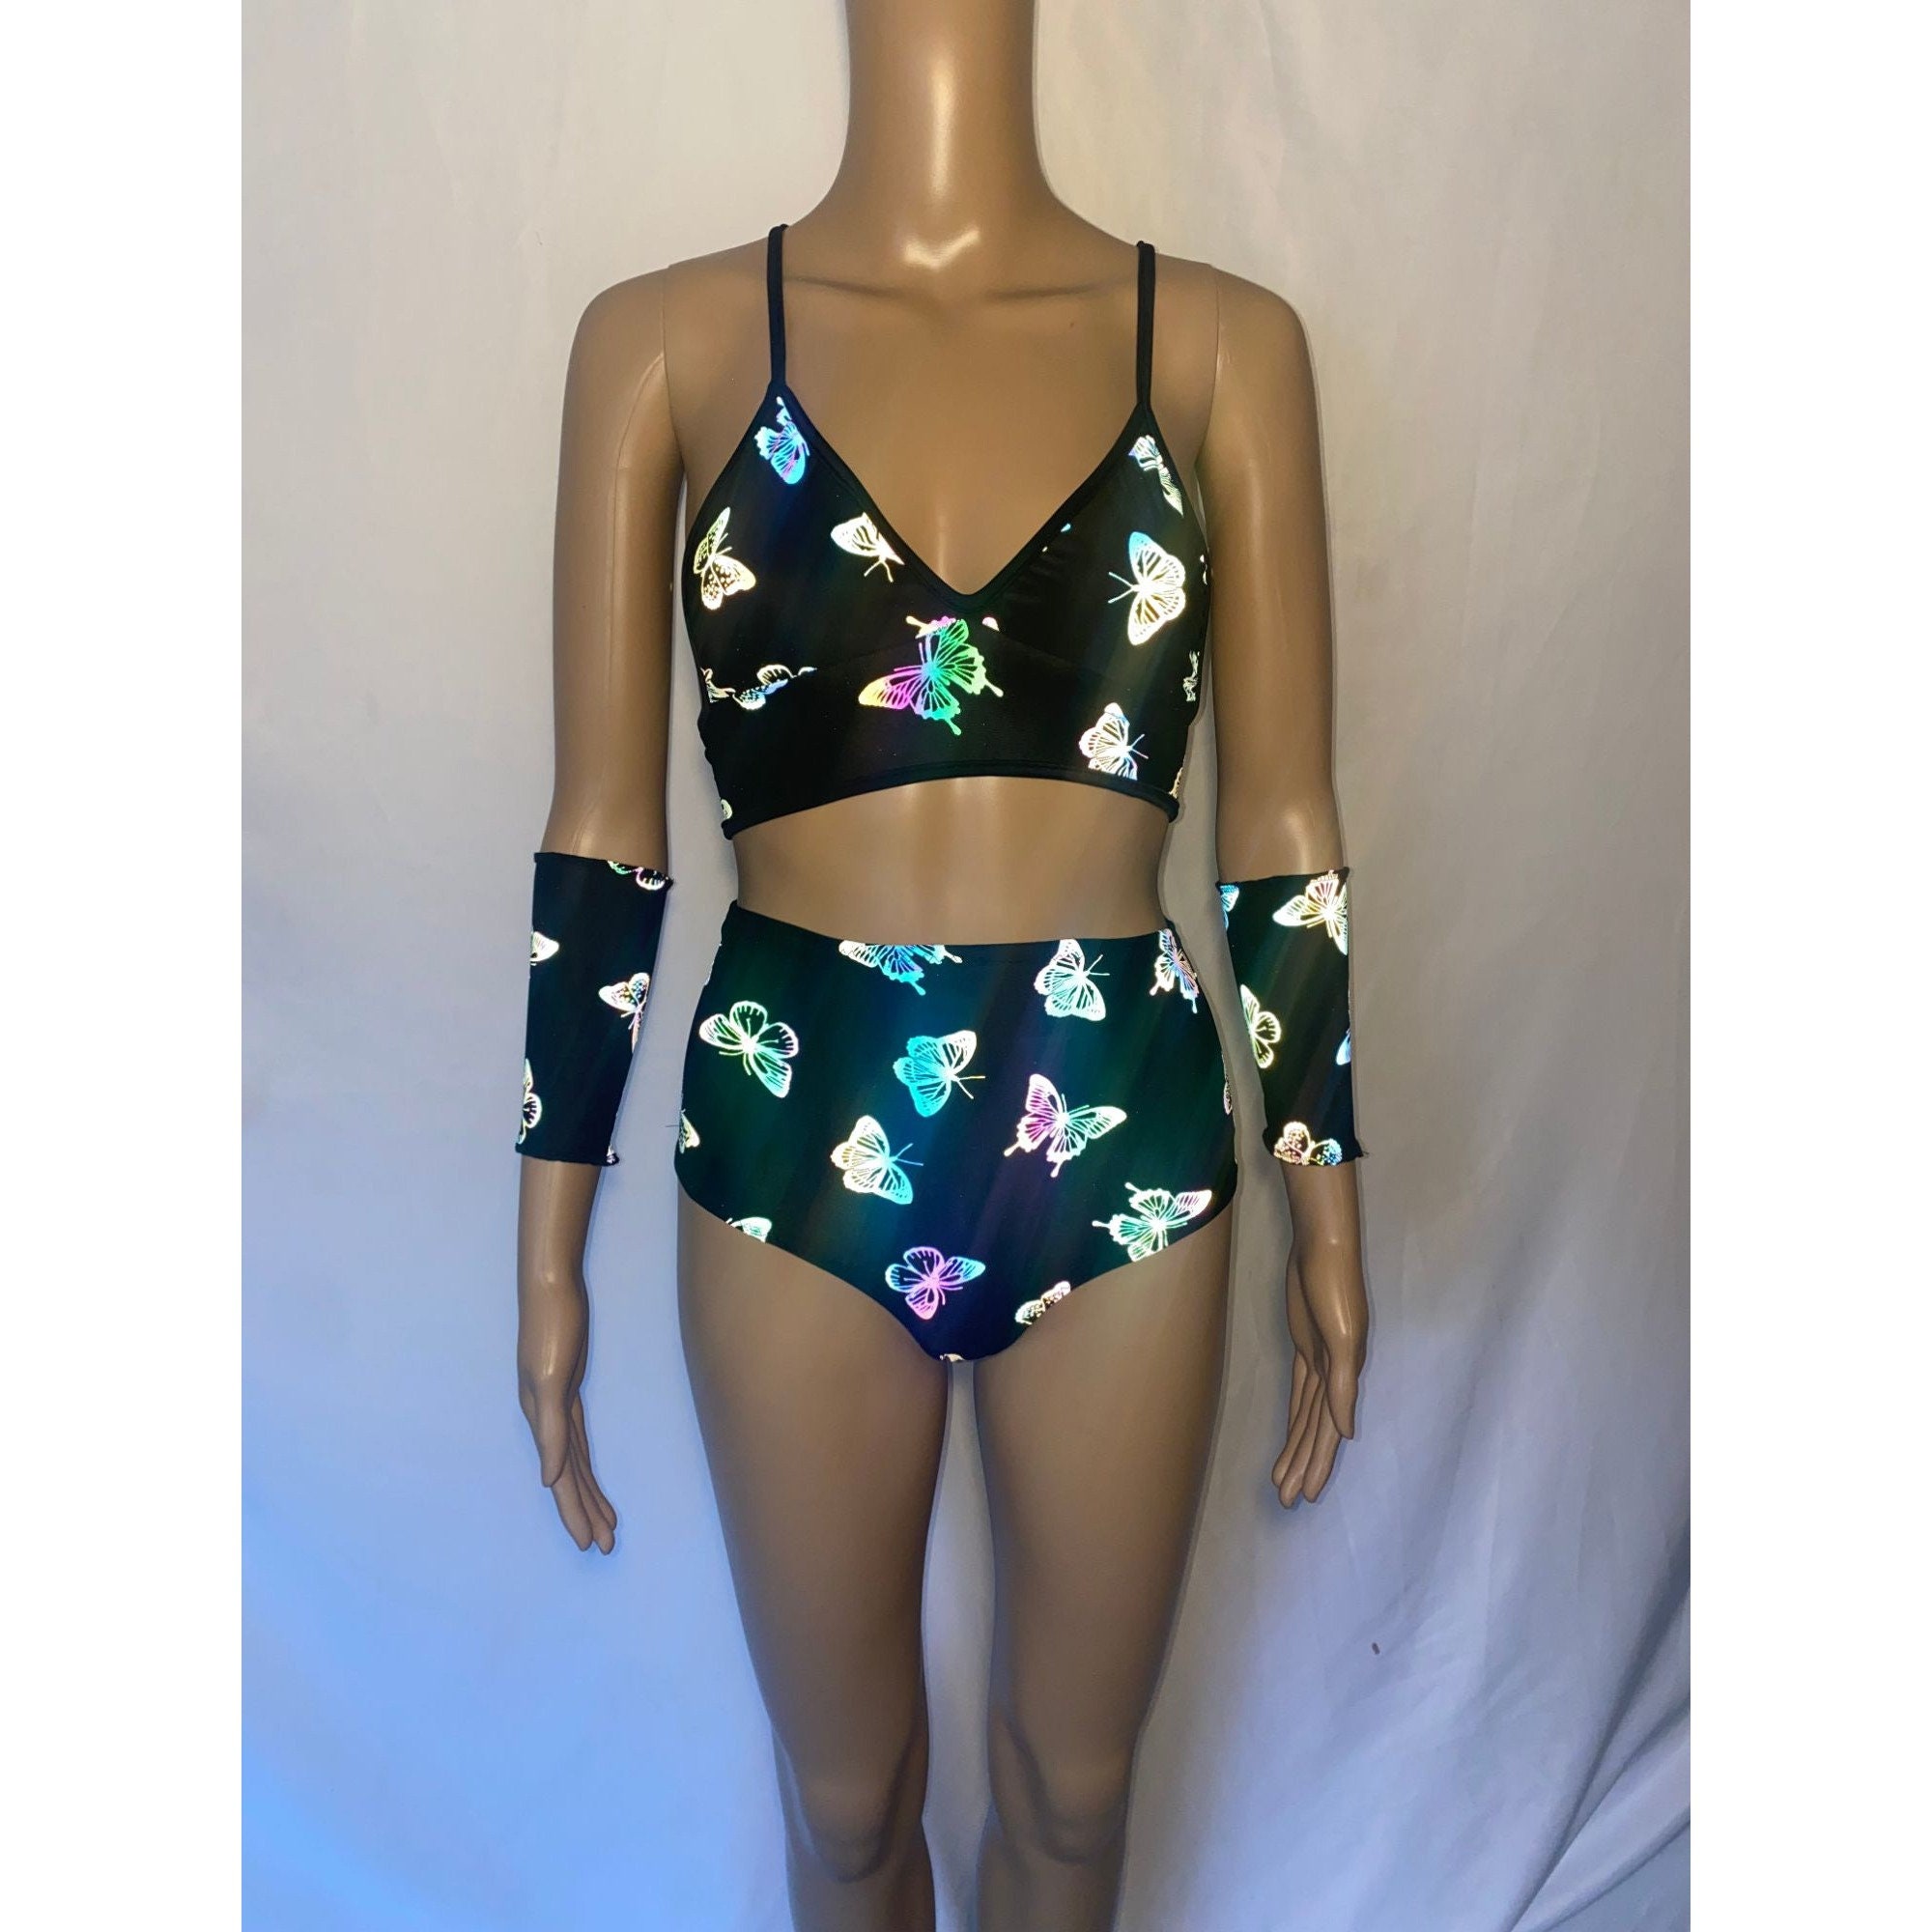  Butterfly Summer Girls Swimsuit Set, Cute Bikini